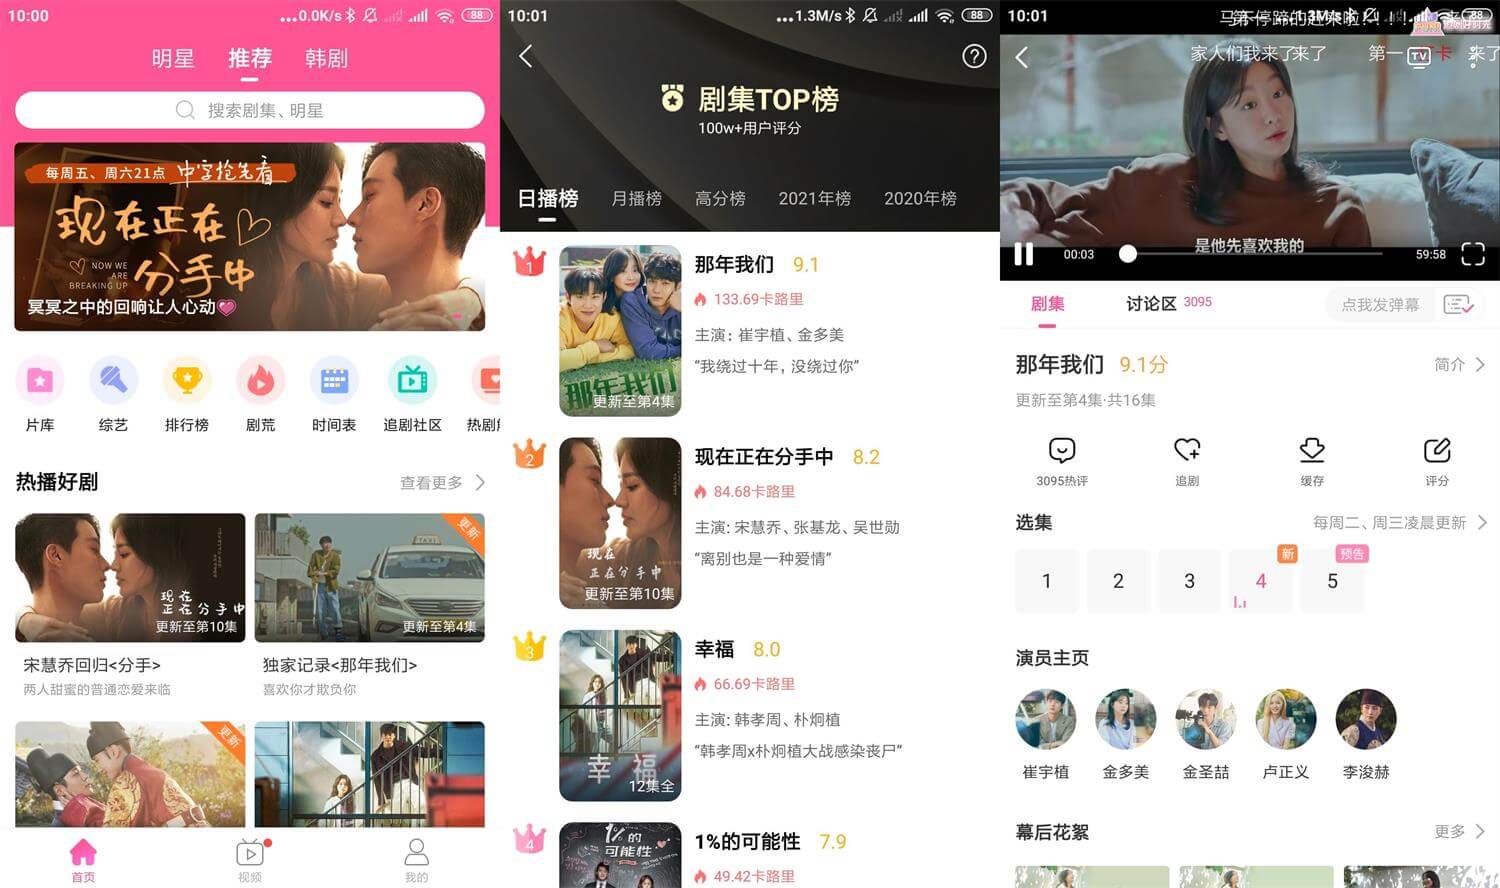 Android 韩剧TV Lite v1.0.0 去除广告极简版 